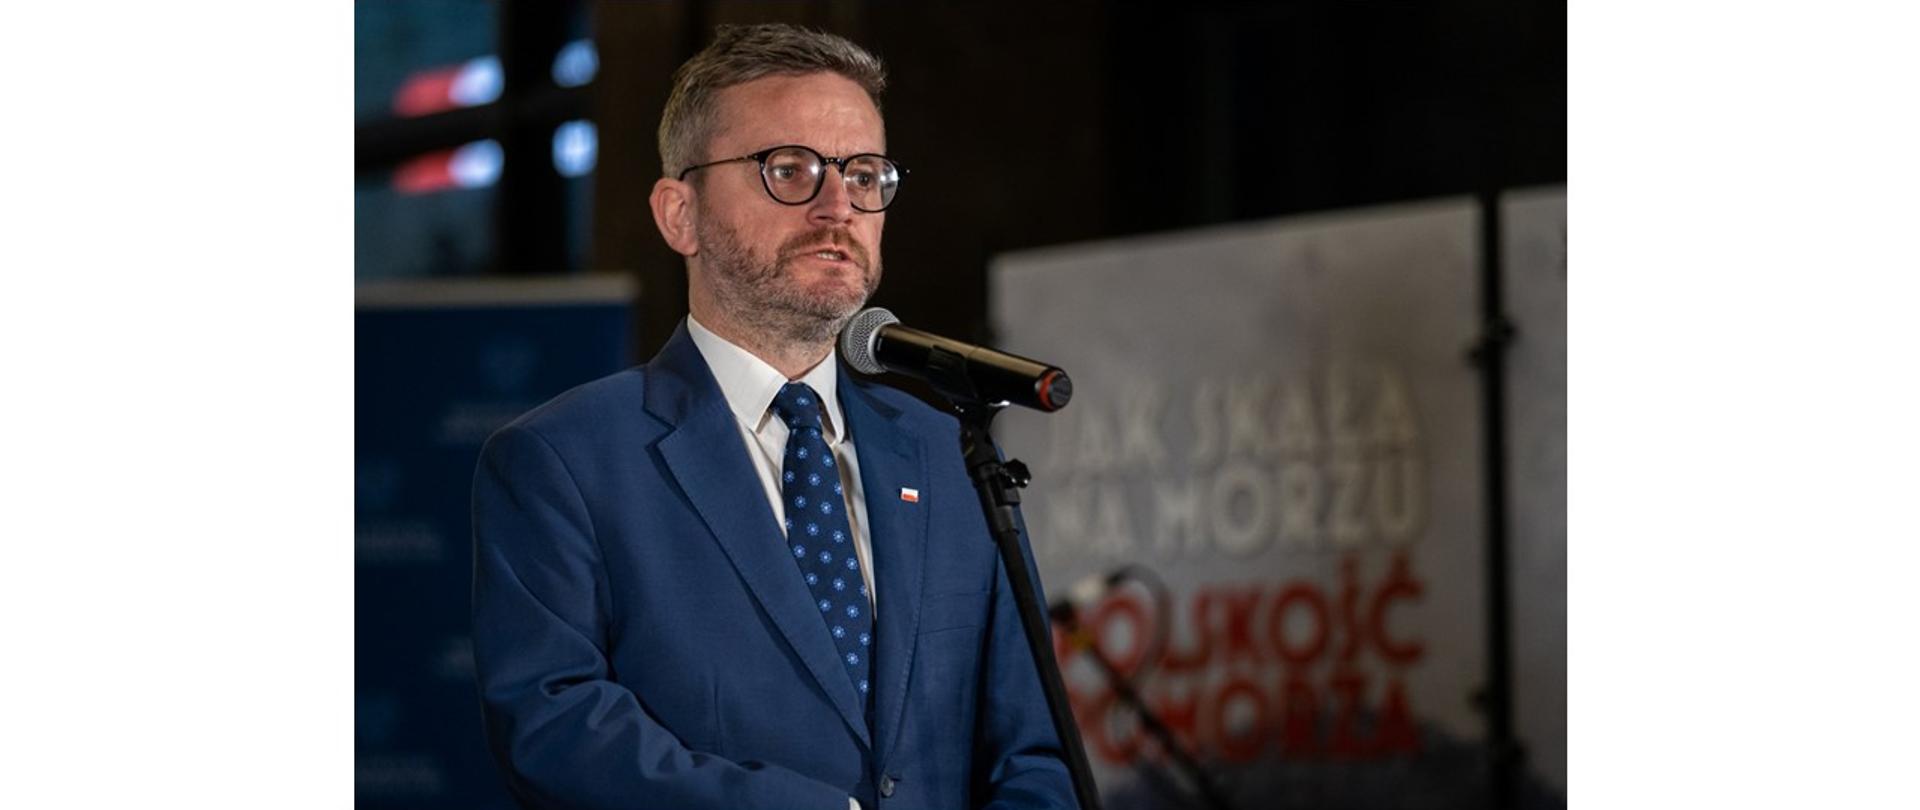 Wiceminister infrastruktury Grzegorz Witkowski na otwarciu wystawy "Jak skała na morzu. Polskość Pomorza"